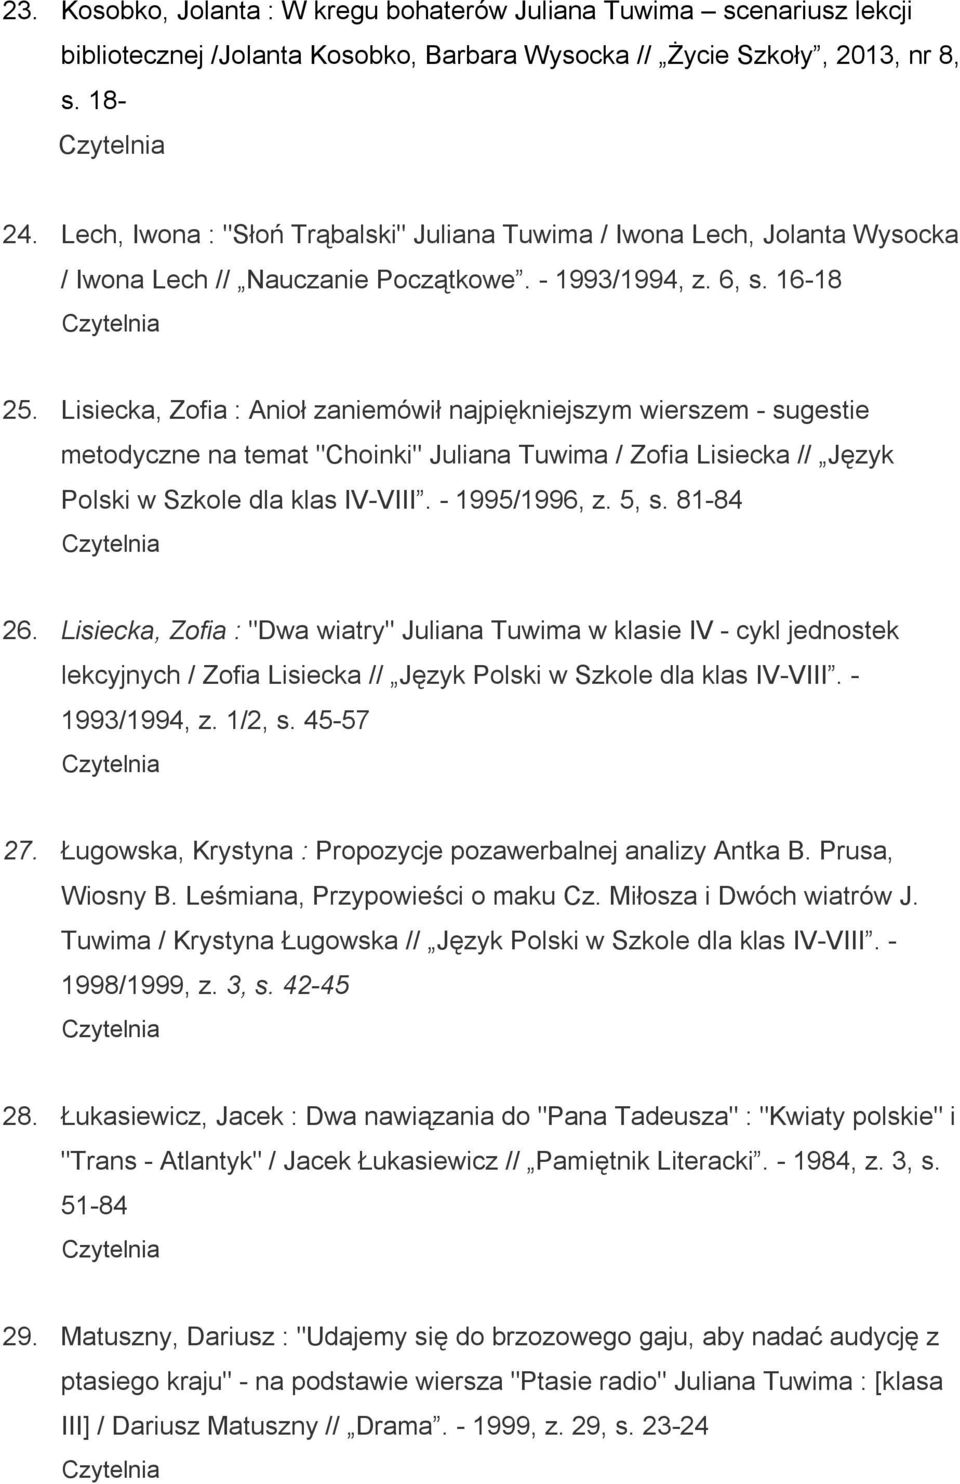 Lisiecka, Zofia : Anioł zaniemówił najpiękniejszym wierszem - sugestie metodyczne na temat "Choinki" Juliana Tuwima / Zofia Lisiecka // Język Polski w Szkole dla klas IV-VIII. - 1995/1996, z. 5, s.